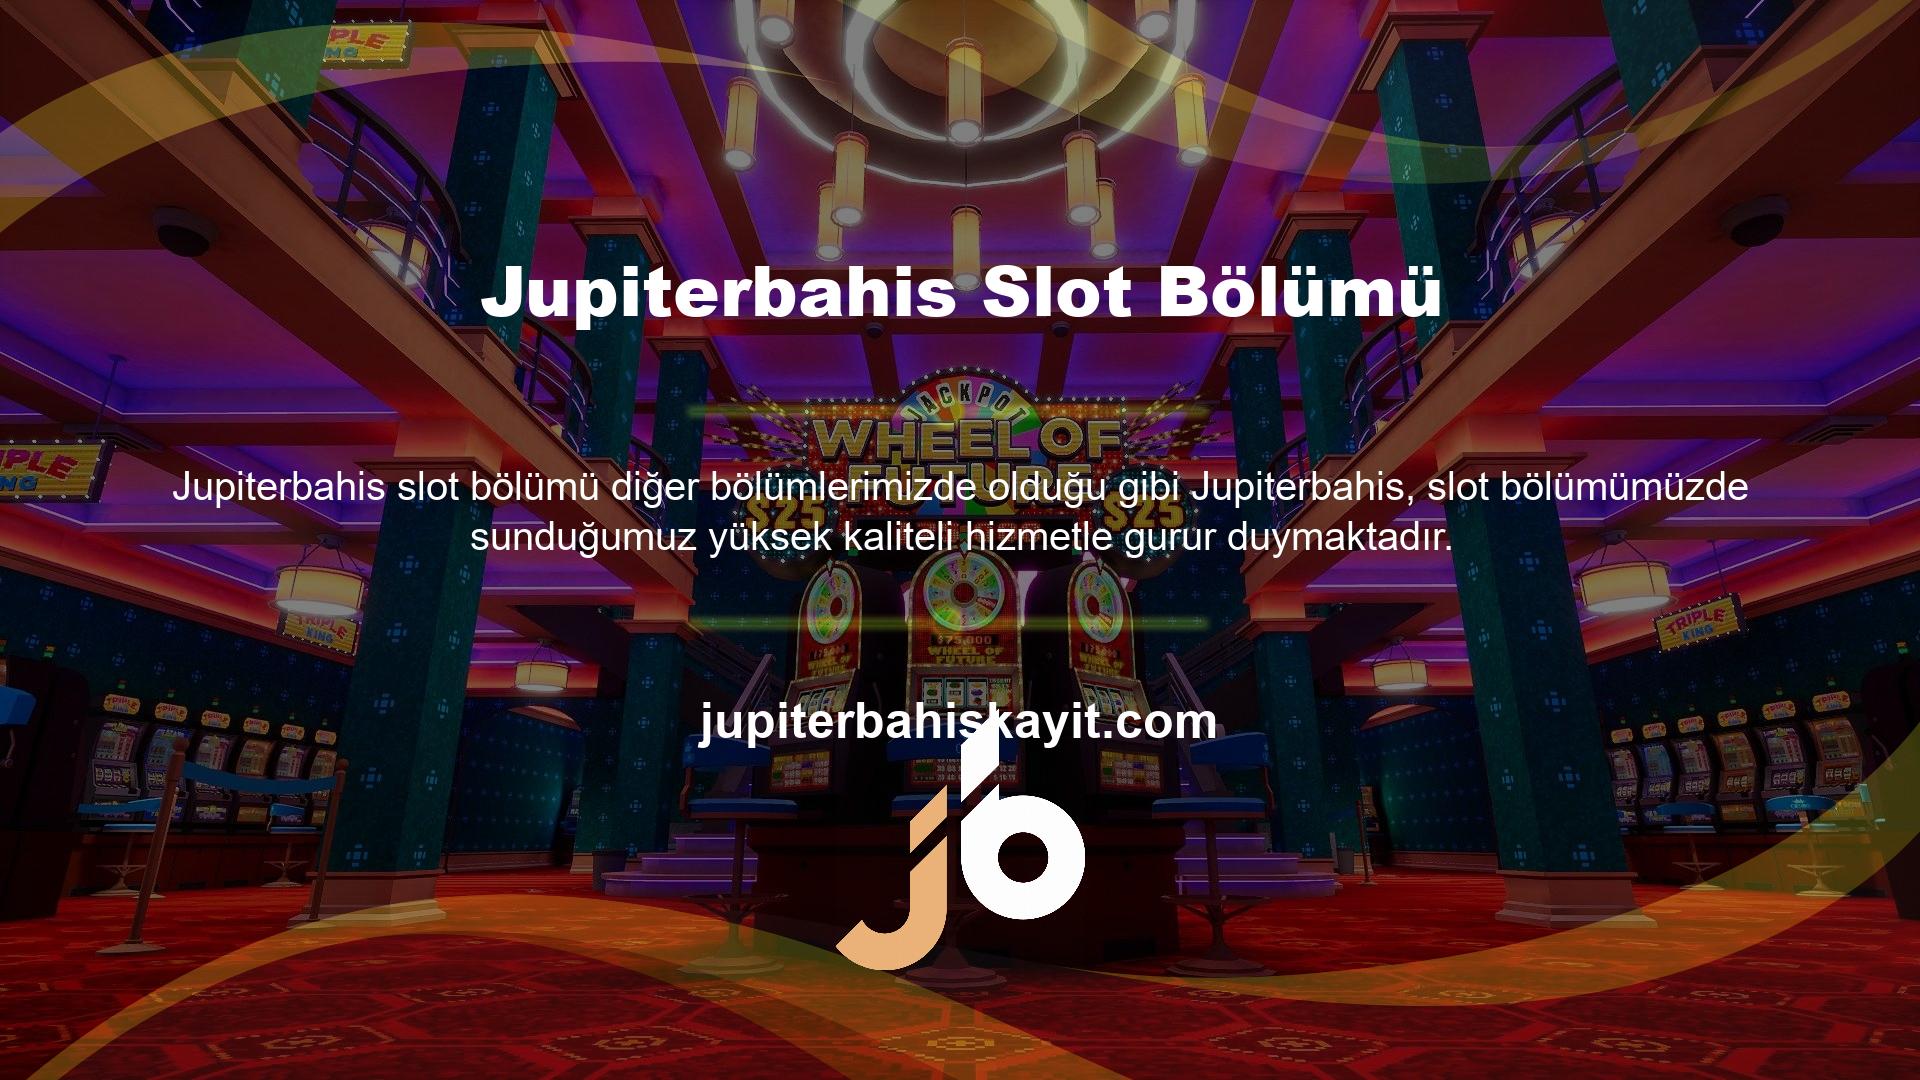 Bu nedenle Jupiterbahis slot oyunları bölümü diğer slot oyunları kadar popüler ve popülerdir